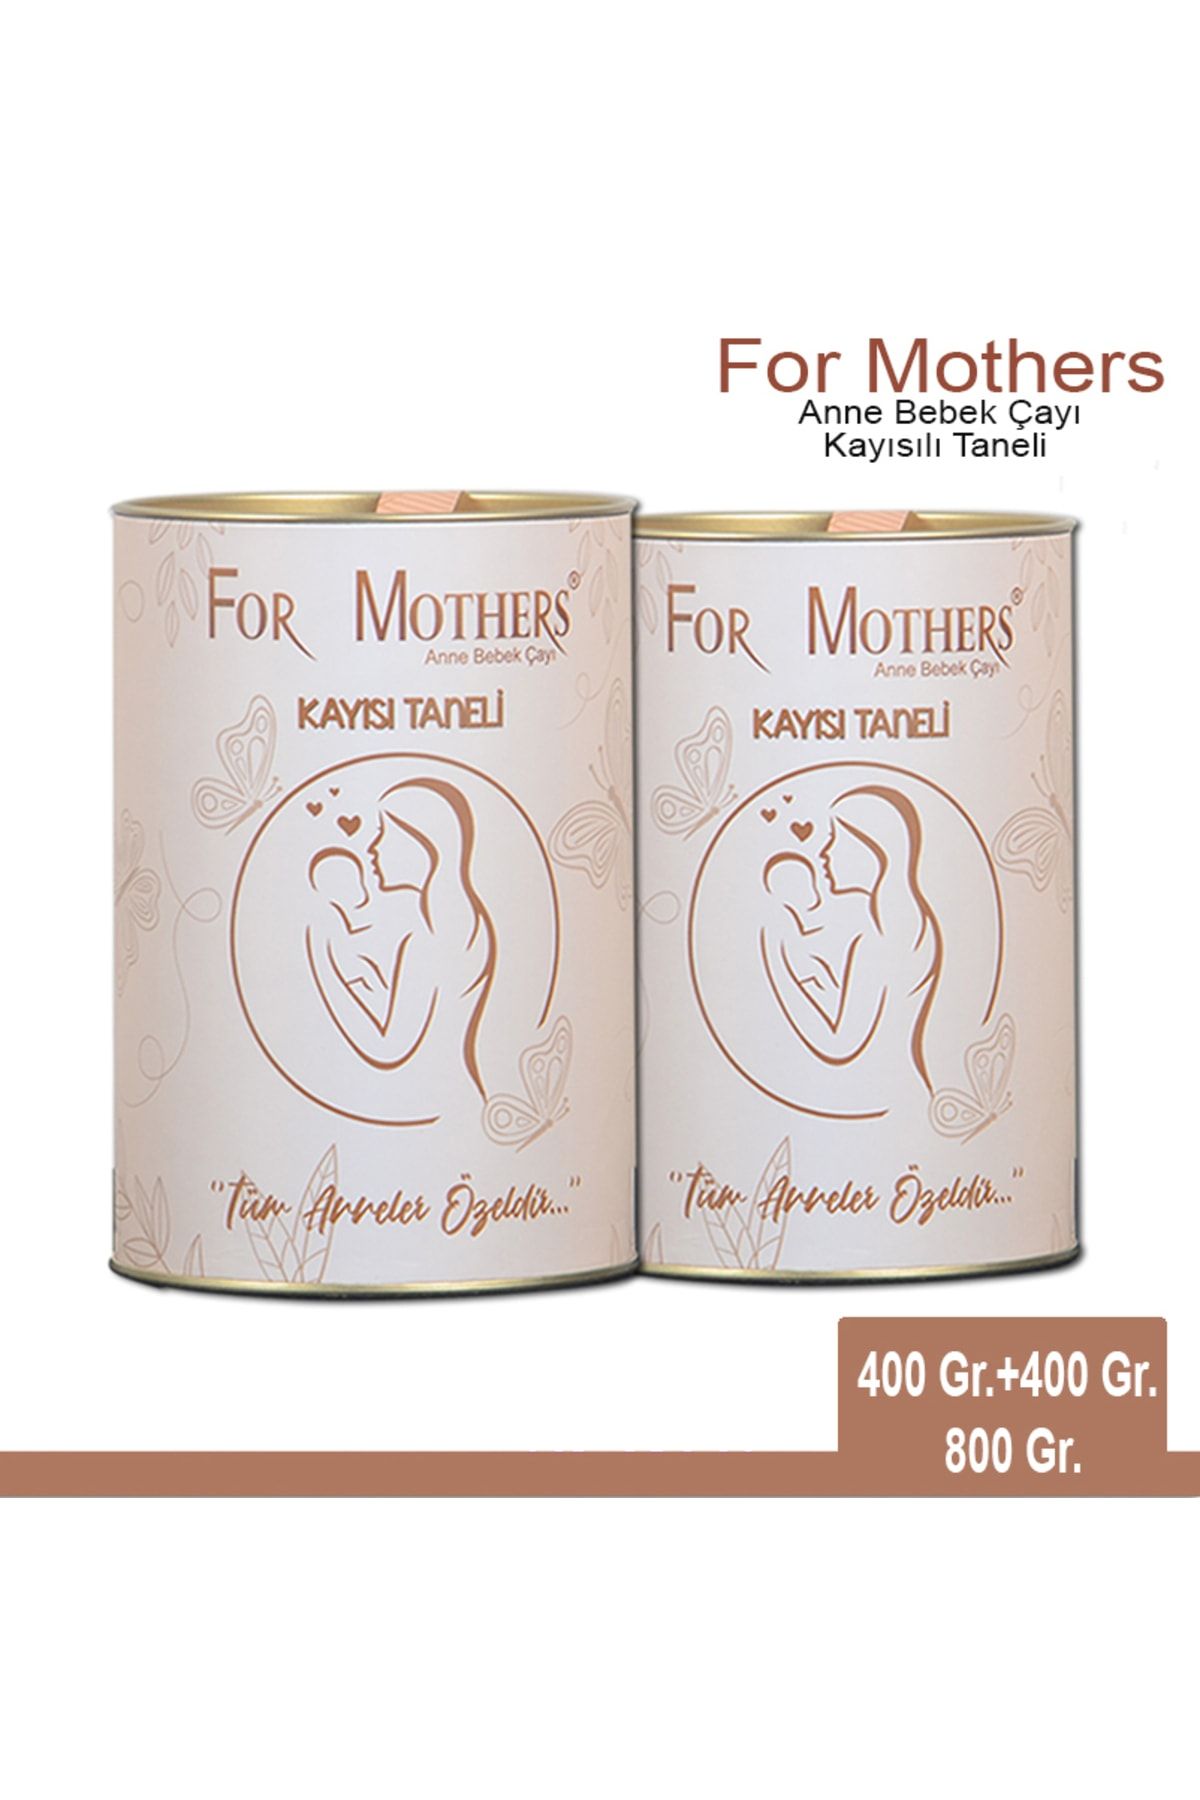 For Mothers Emziren Anneler Için Süt Arttırıcı Bitkisel Anne Ve Bebek Çayı - Kayısı Taneli - Iki Paket